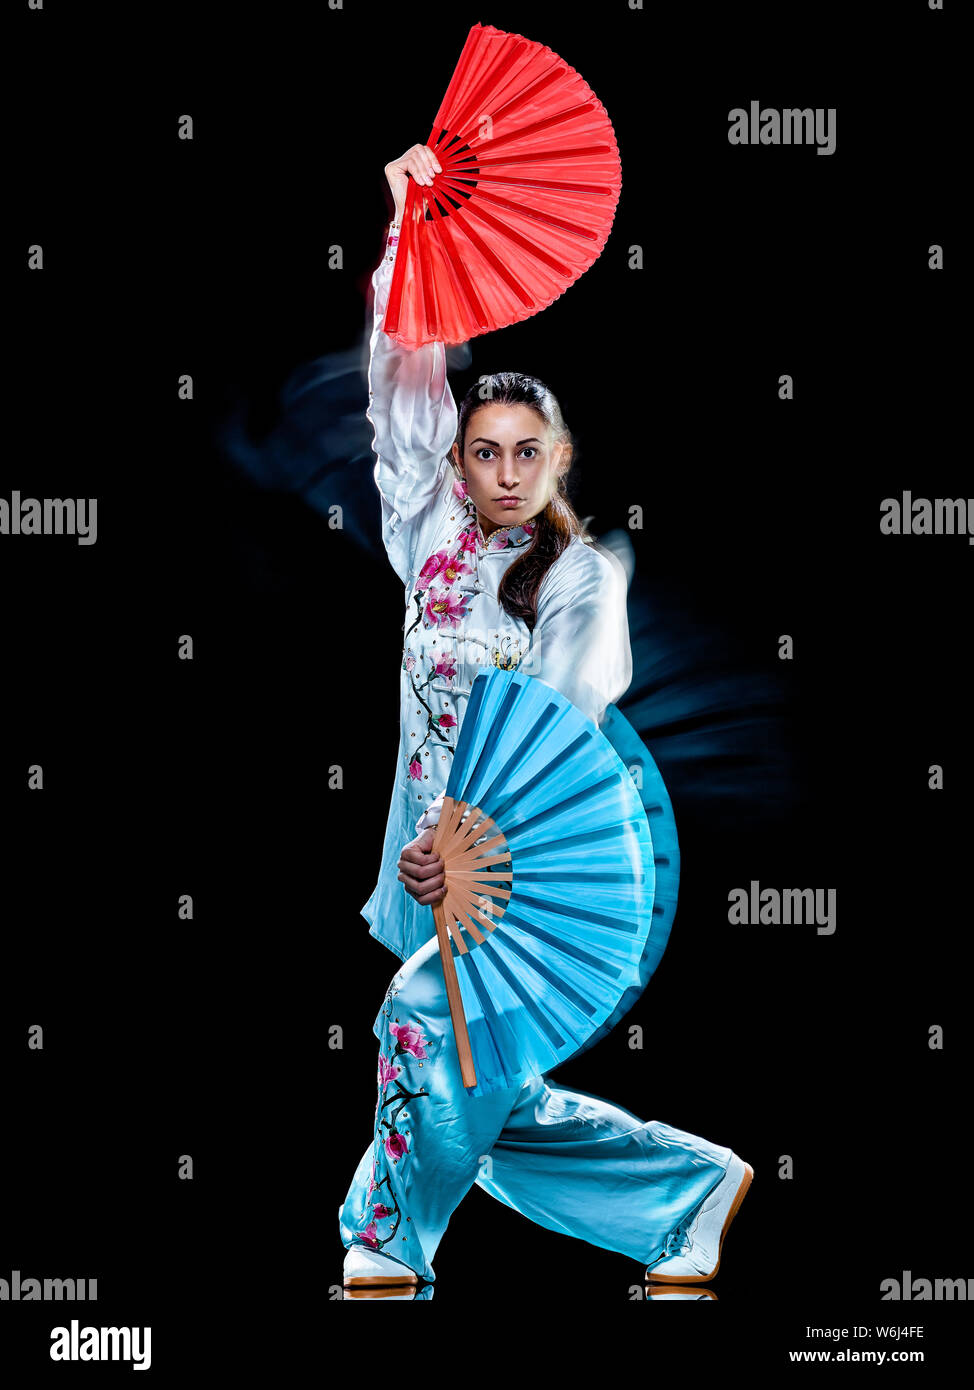 Una donna cinese partacticing Tai Chi Chuan Tadjiquan postura studio shot isolato su sfondo nero con leggero effetto di pittura Foto Stock